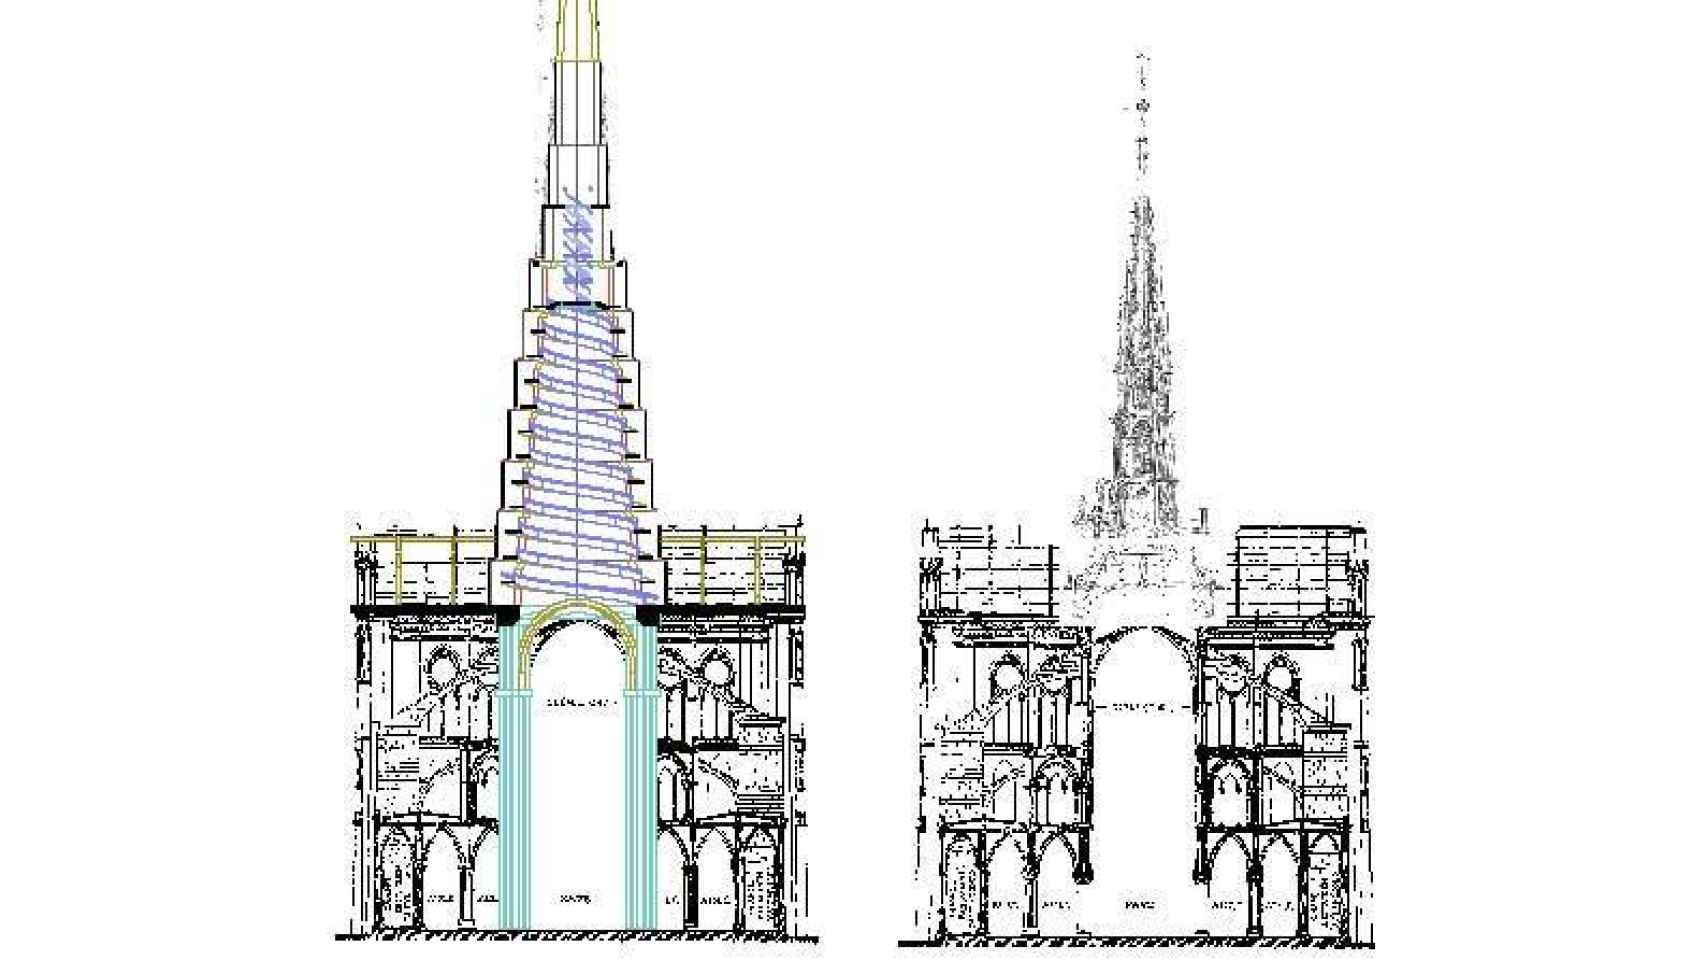 Sección vertical del templo por la nave del crucero con la aguja sobreelevada siguiendo su propio ángulo natural hasta llegar a apoyar en los 4 pilares del crucero